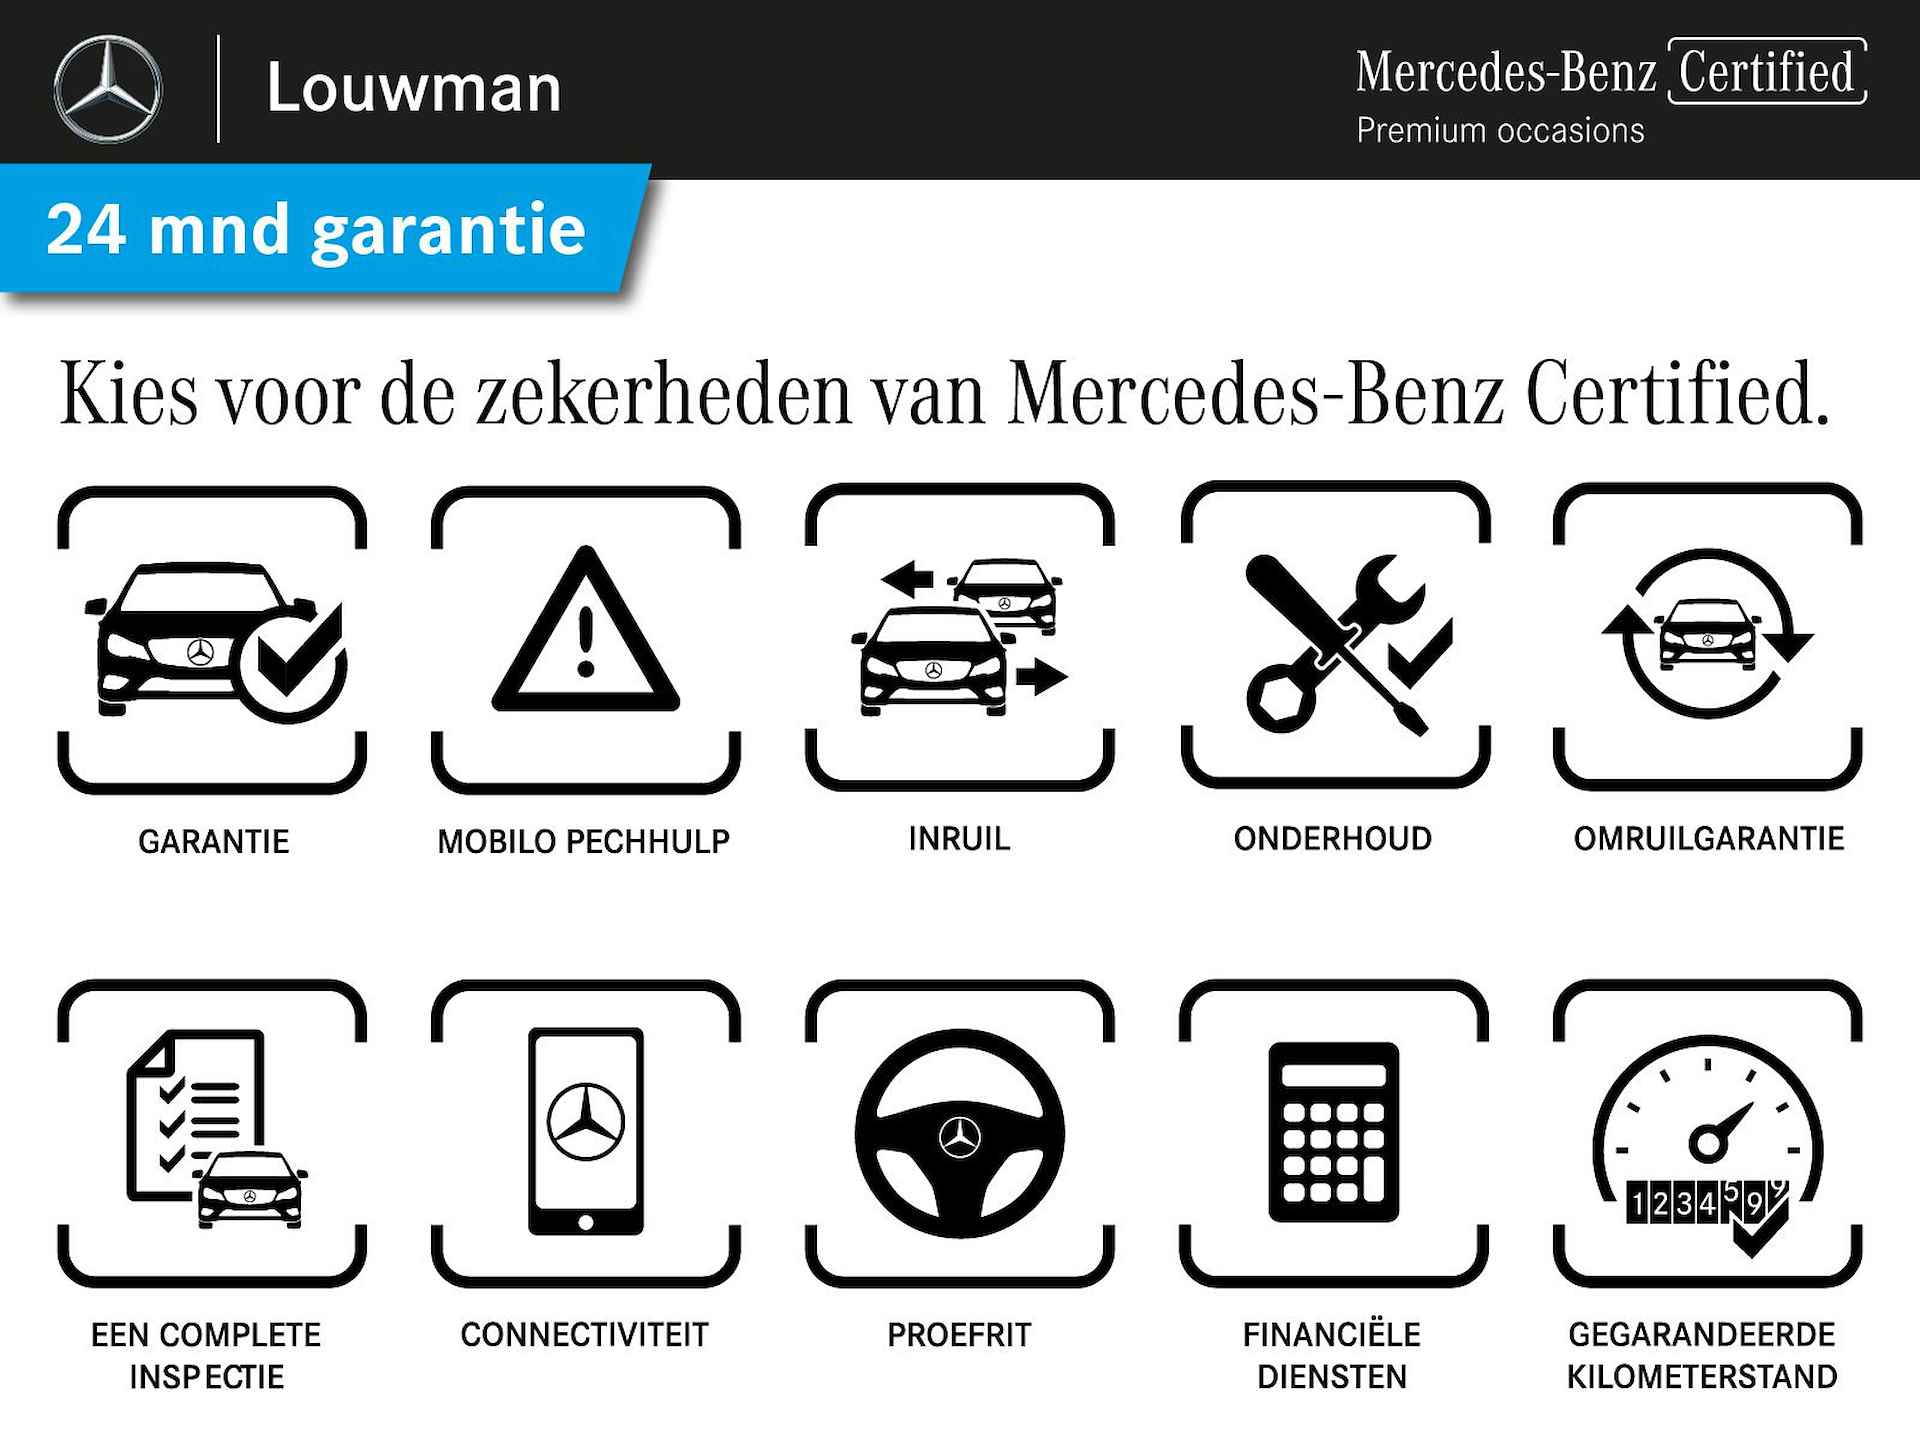 Mercedes-Benz S-Klasse 450 e Lang AMG Line Multi spaaks lichtmetalen velgen| Premium plus pakket | Night Pakket | Achteras meesturend 4,5 graad | Alarm klasse 5 | inclusief 24 maanden MB Certified garantie voor europa - 37/37